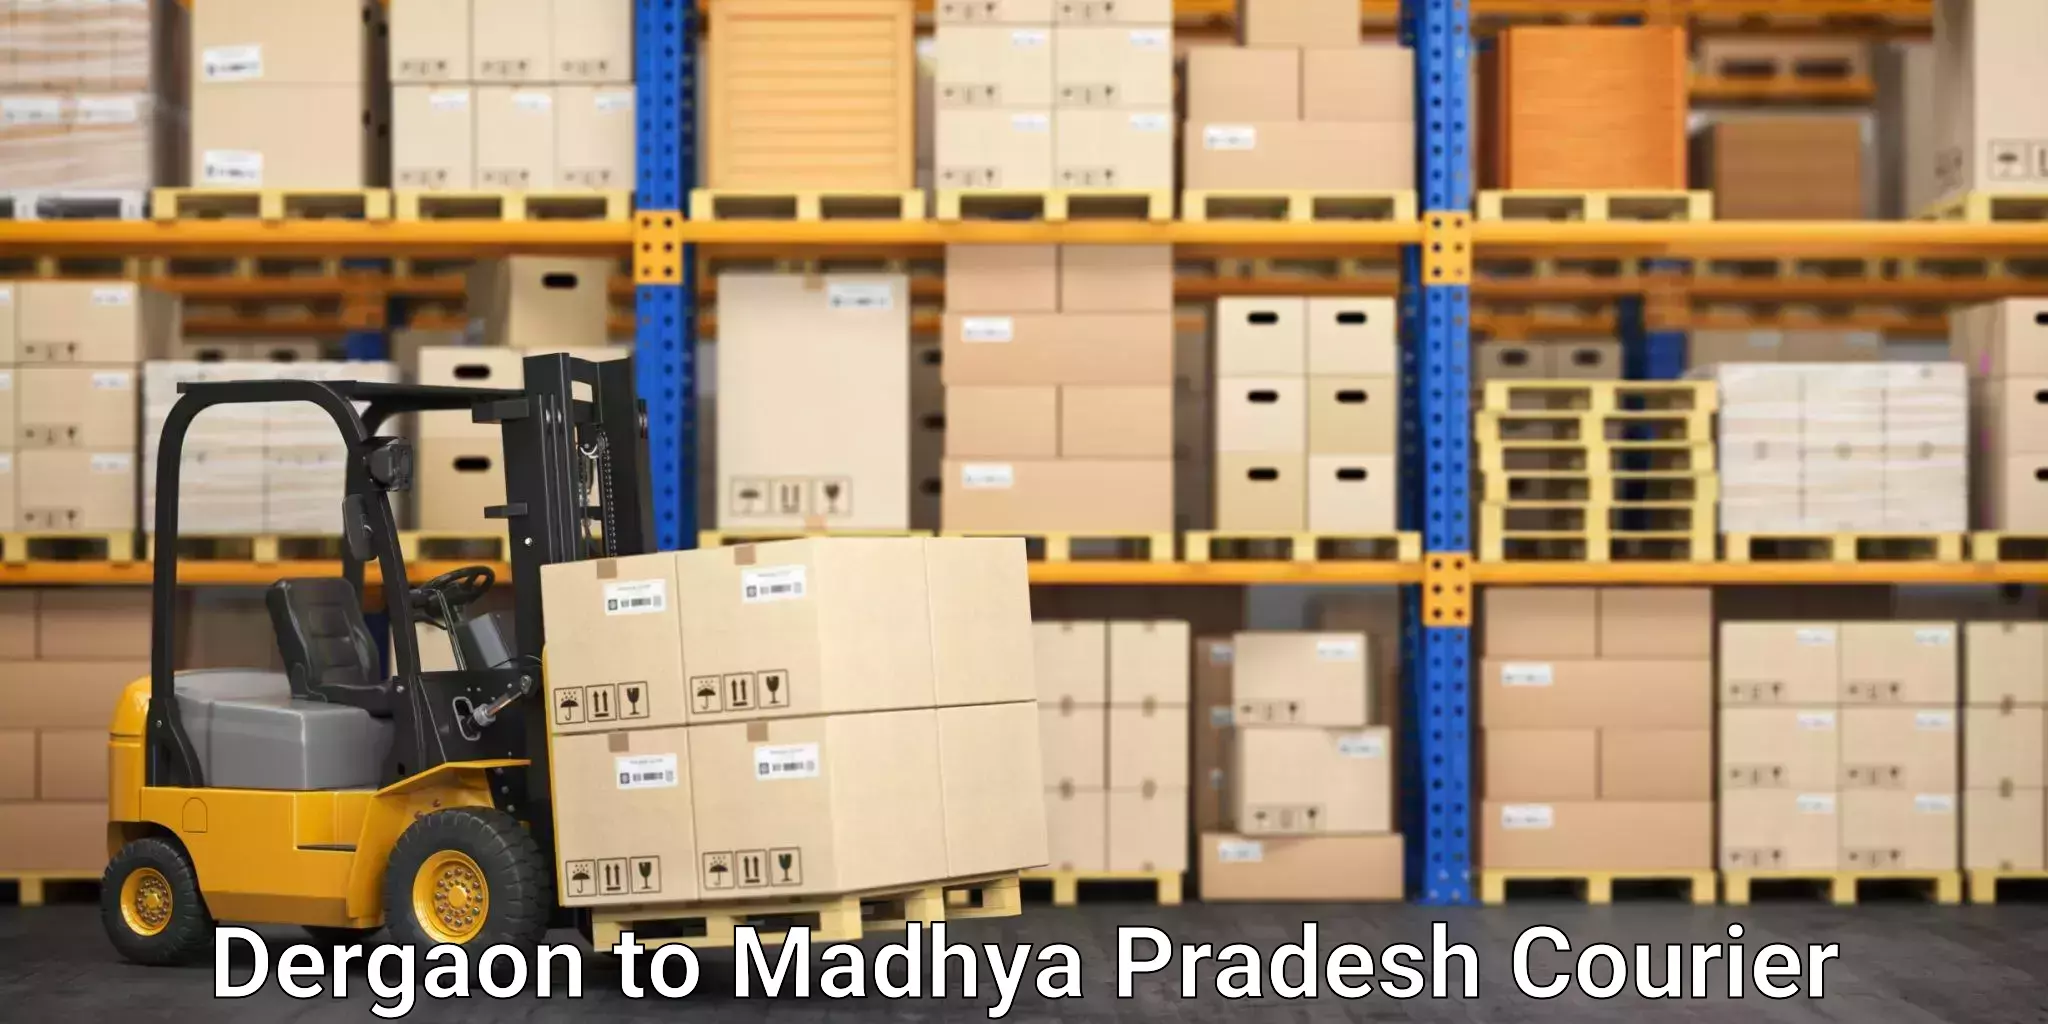 Ocean freight courier Dergaon to Madhya Pradesh